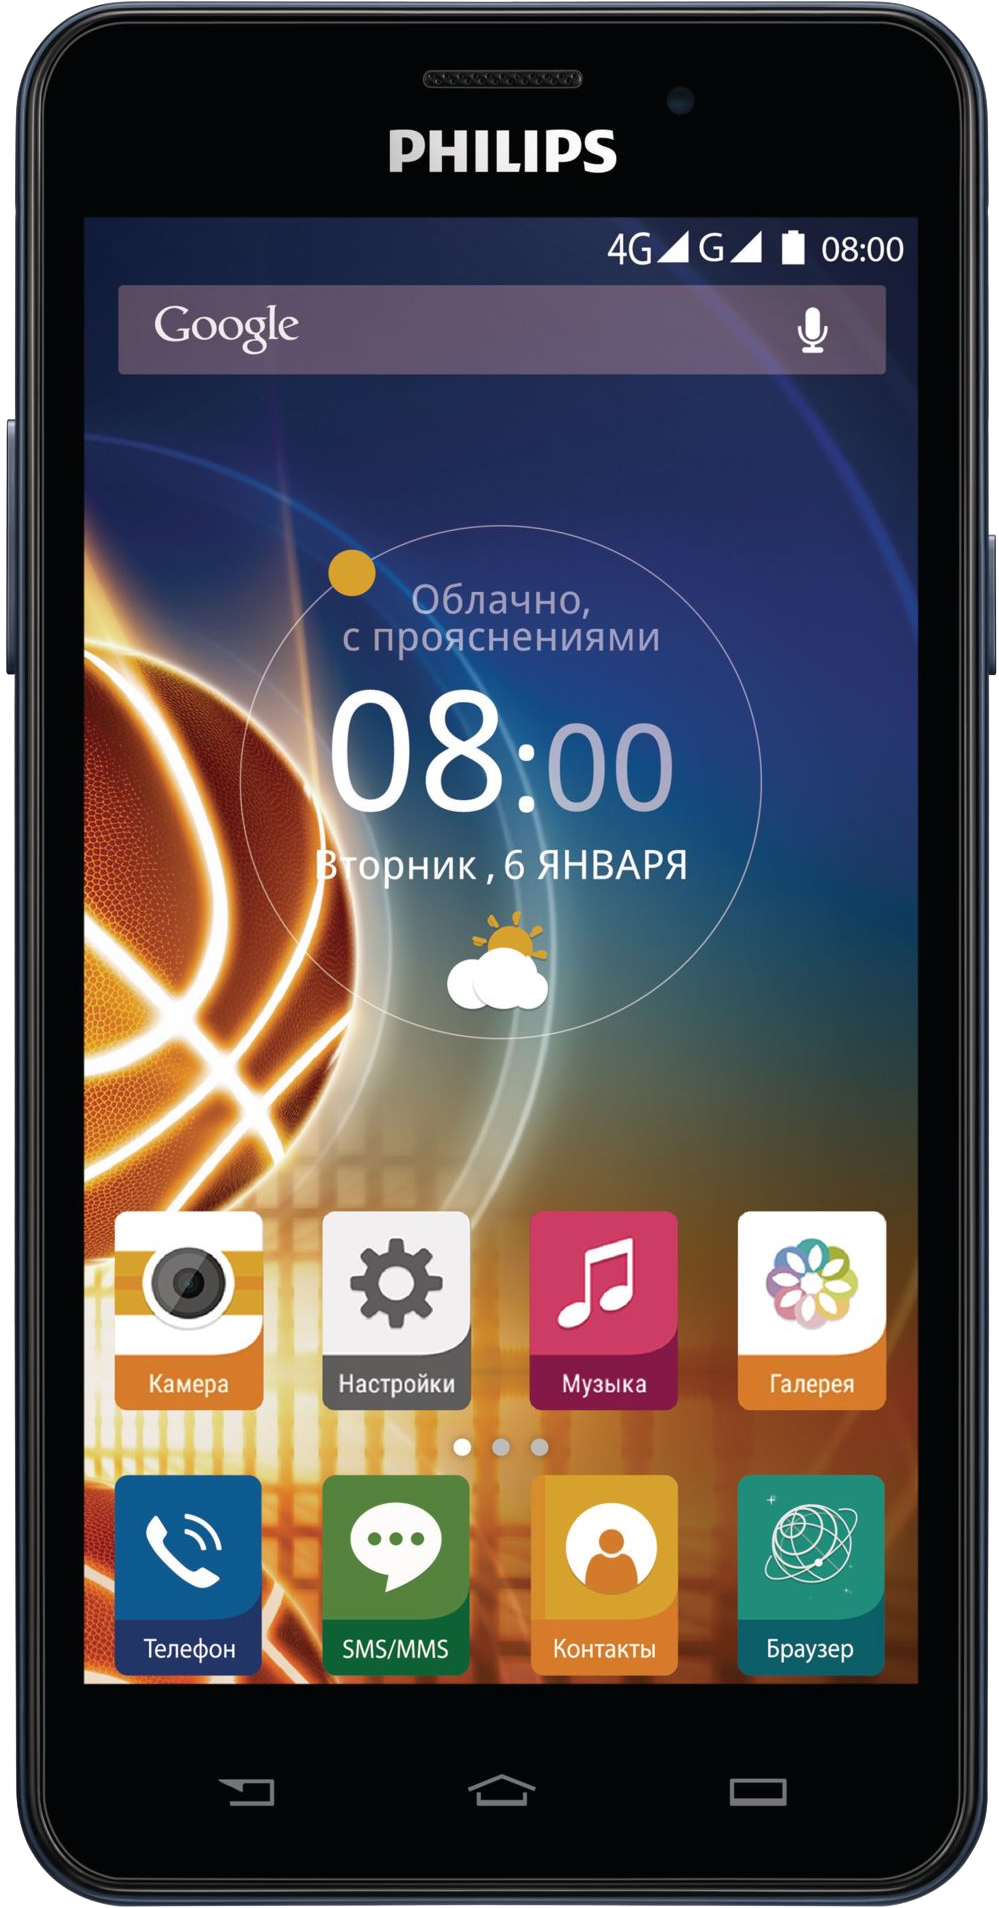 Филипс челябинск. Смартфон Philips Xenium v526 LTE. Philips Xenium смартфон сенсорный. Сенсорный телефон Филипс Xenium v526. Philips Xenium Android 2 SIM.